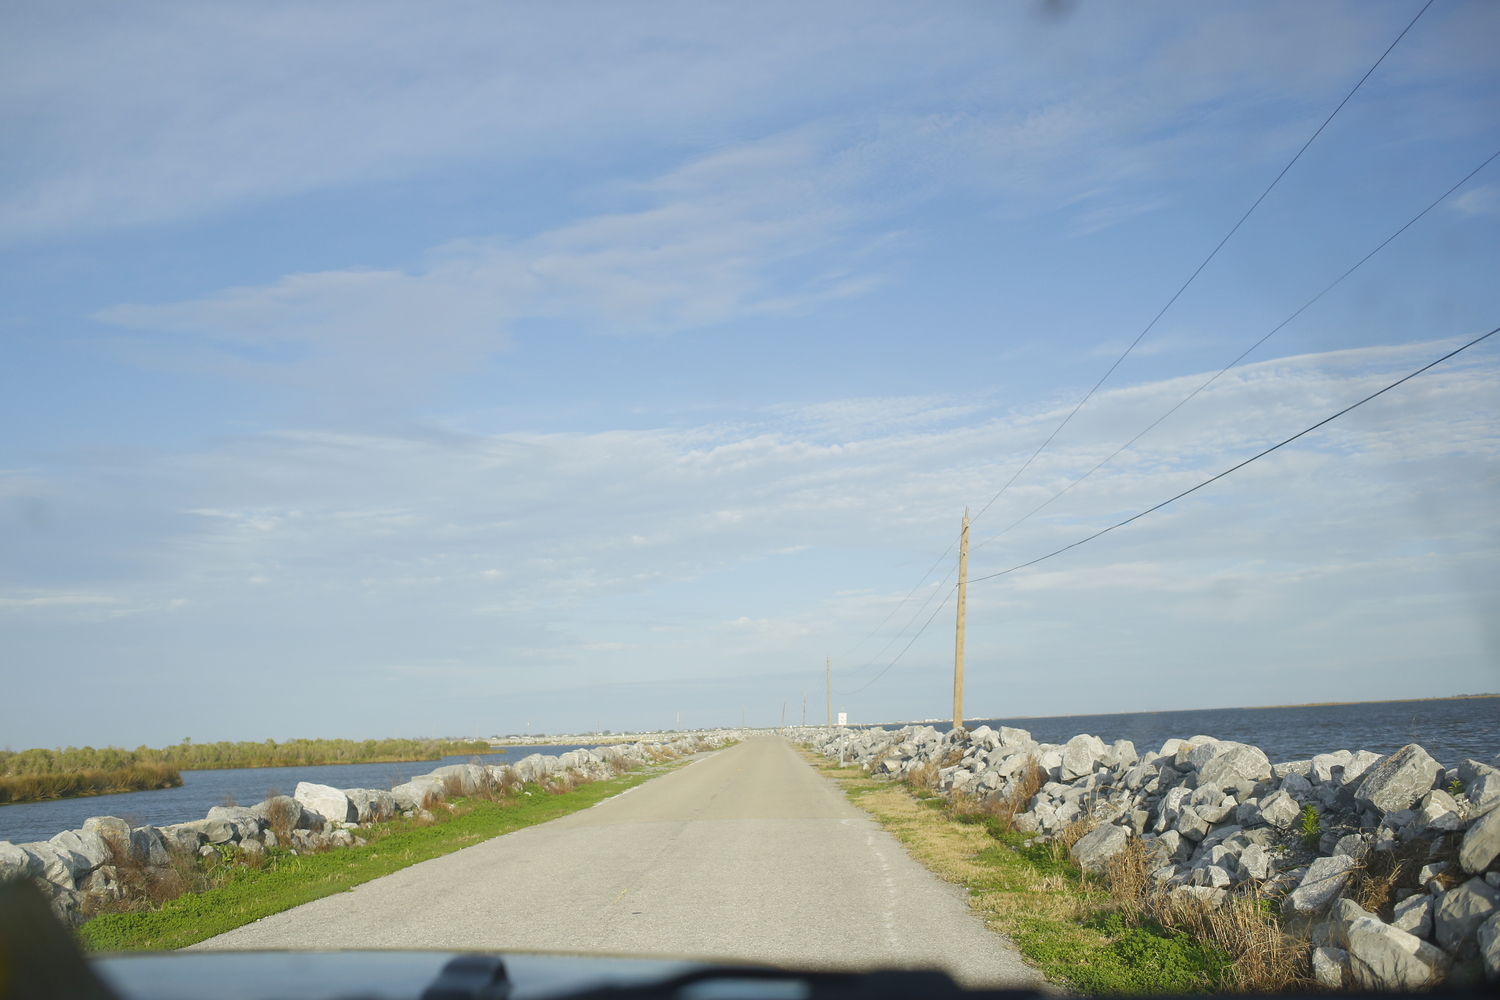 La route vers l’Isle de Jean Charles, désormais entourée par l’eau. Des pierres ont été installées pour éviter les inondations sur la route © Globe Reporters